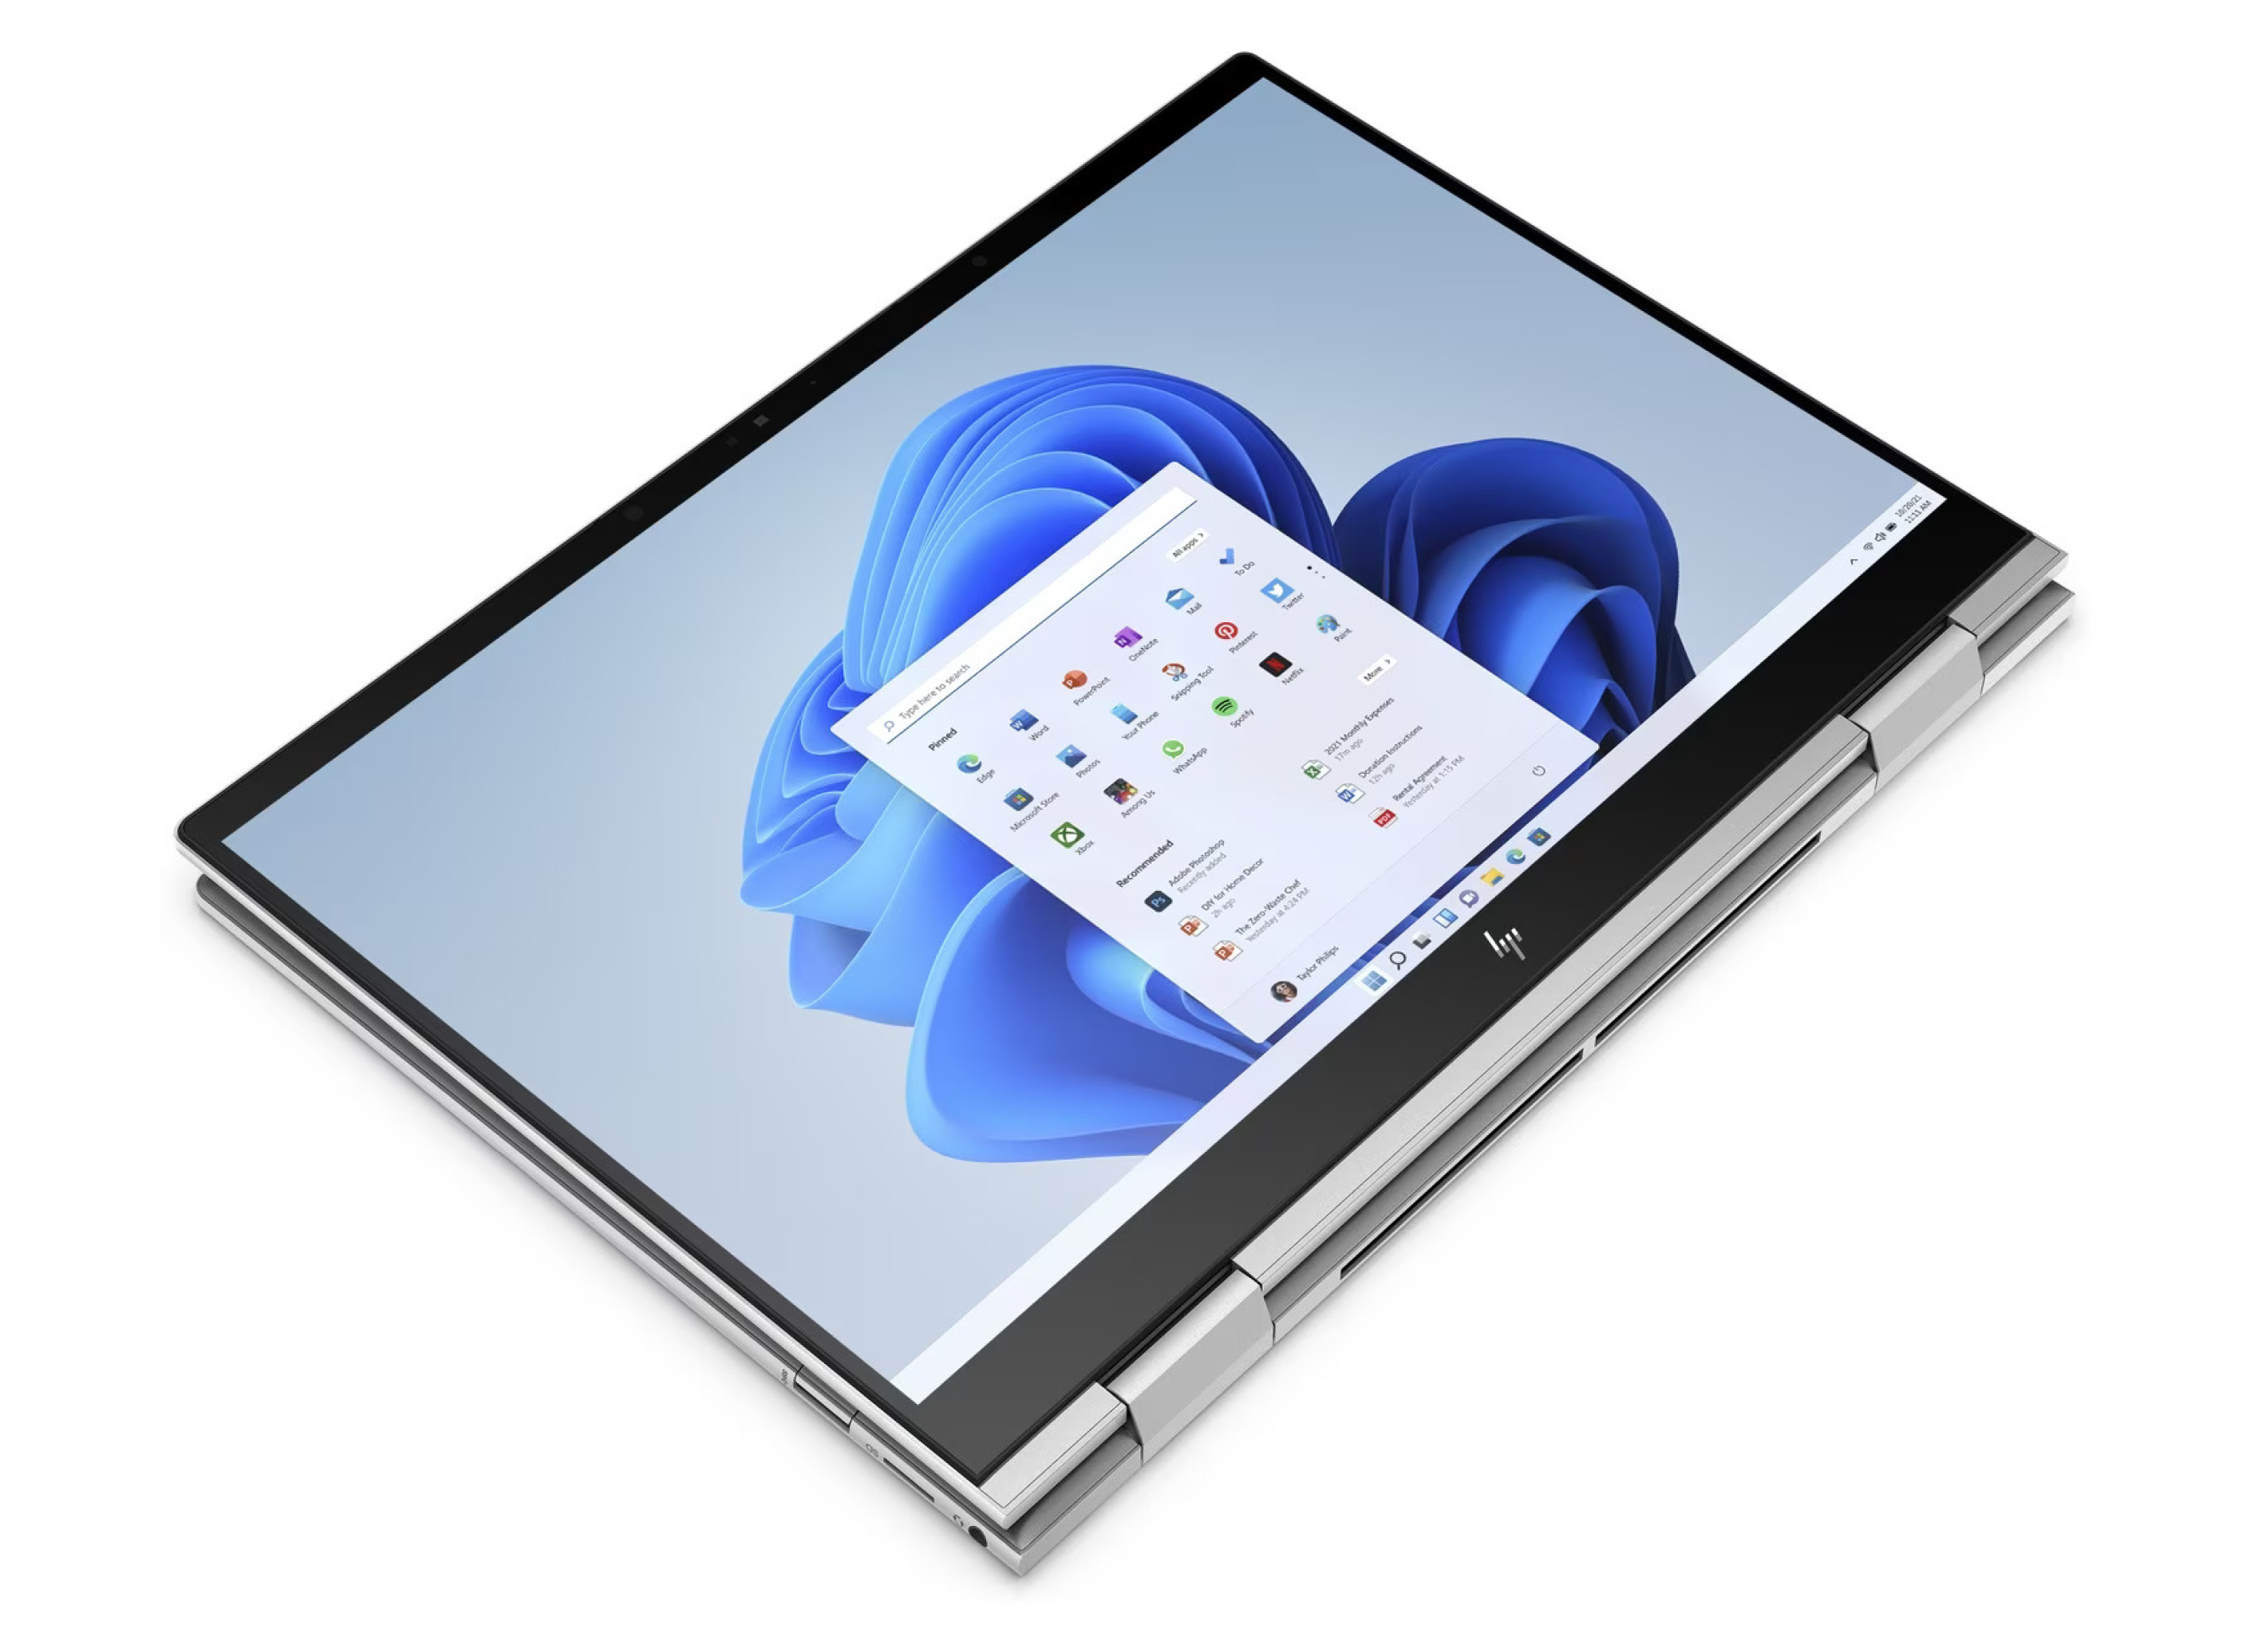  قیمت لپ تاپ اچ پی Envy 13 X360 i5 1230u نمایشگر 360 درجه لمسی | لاکچری لپ تاپ 